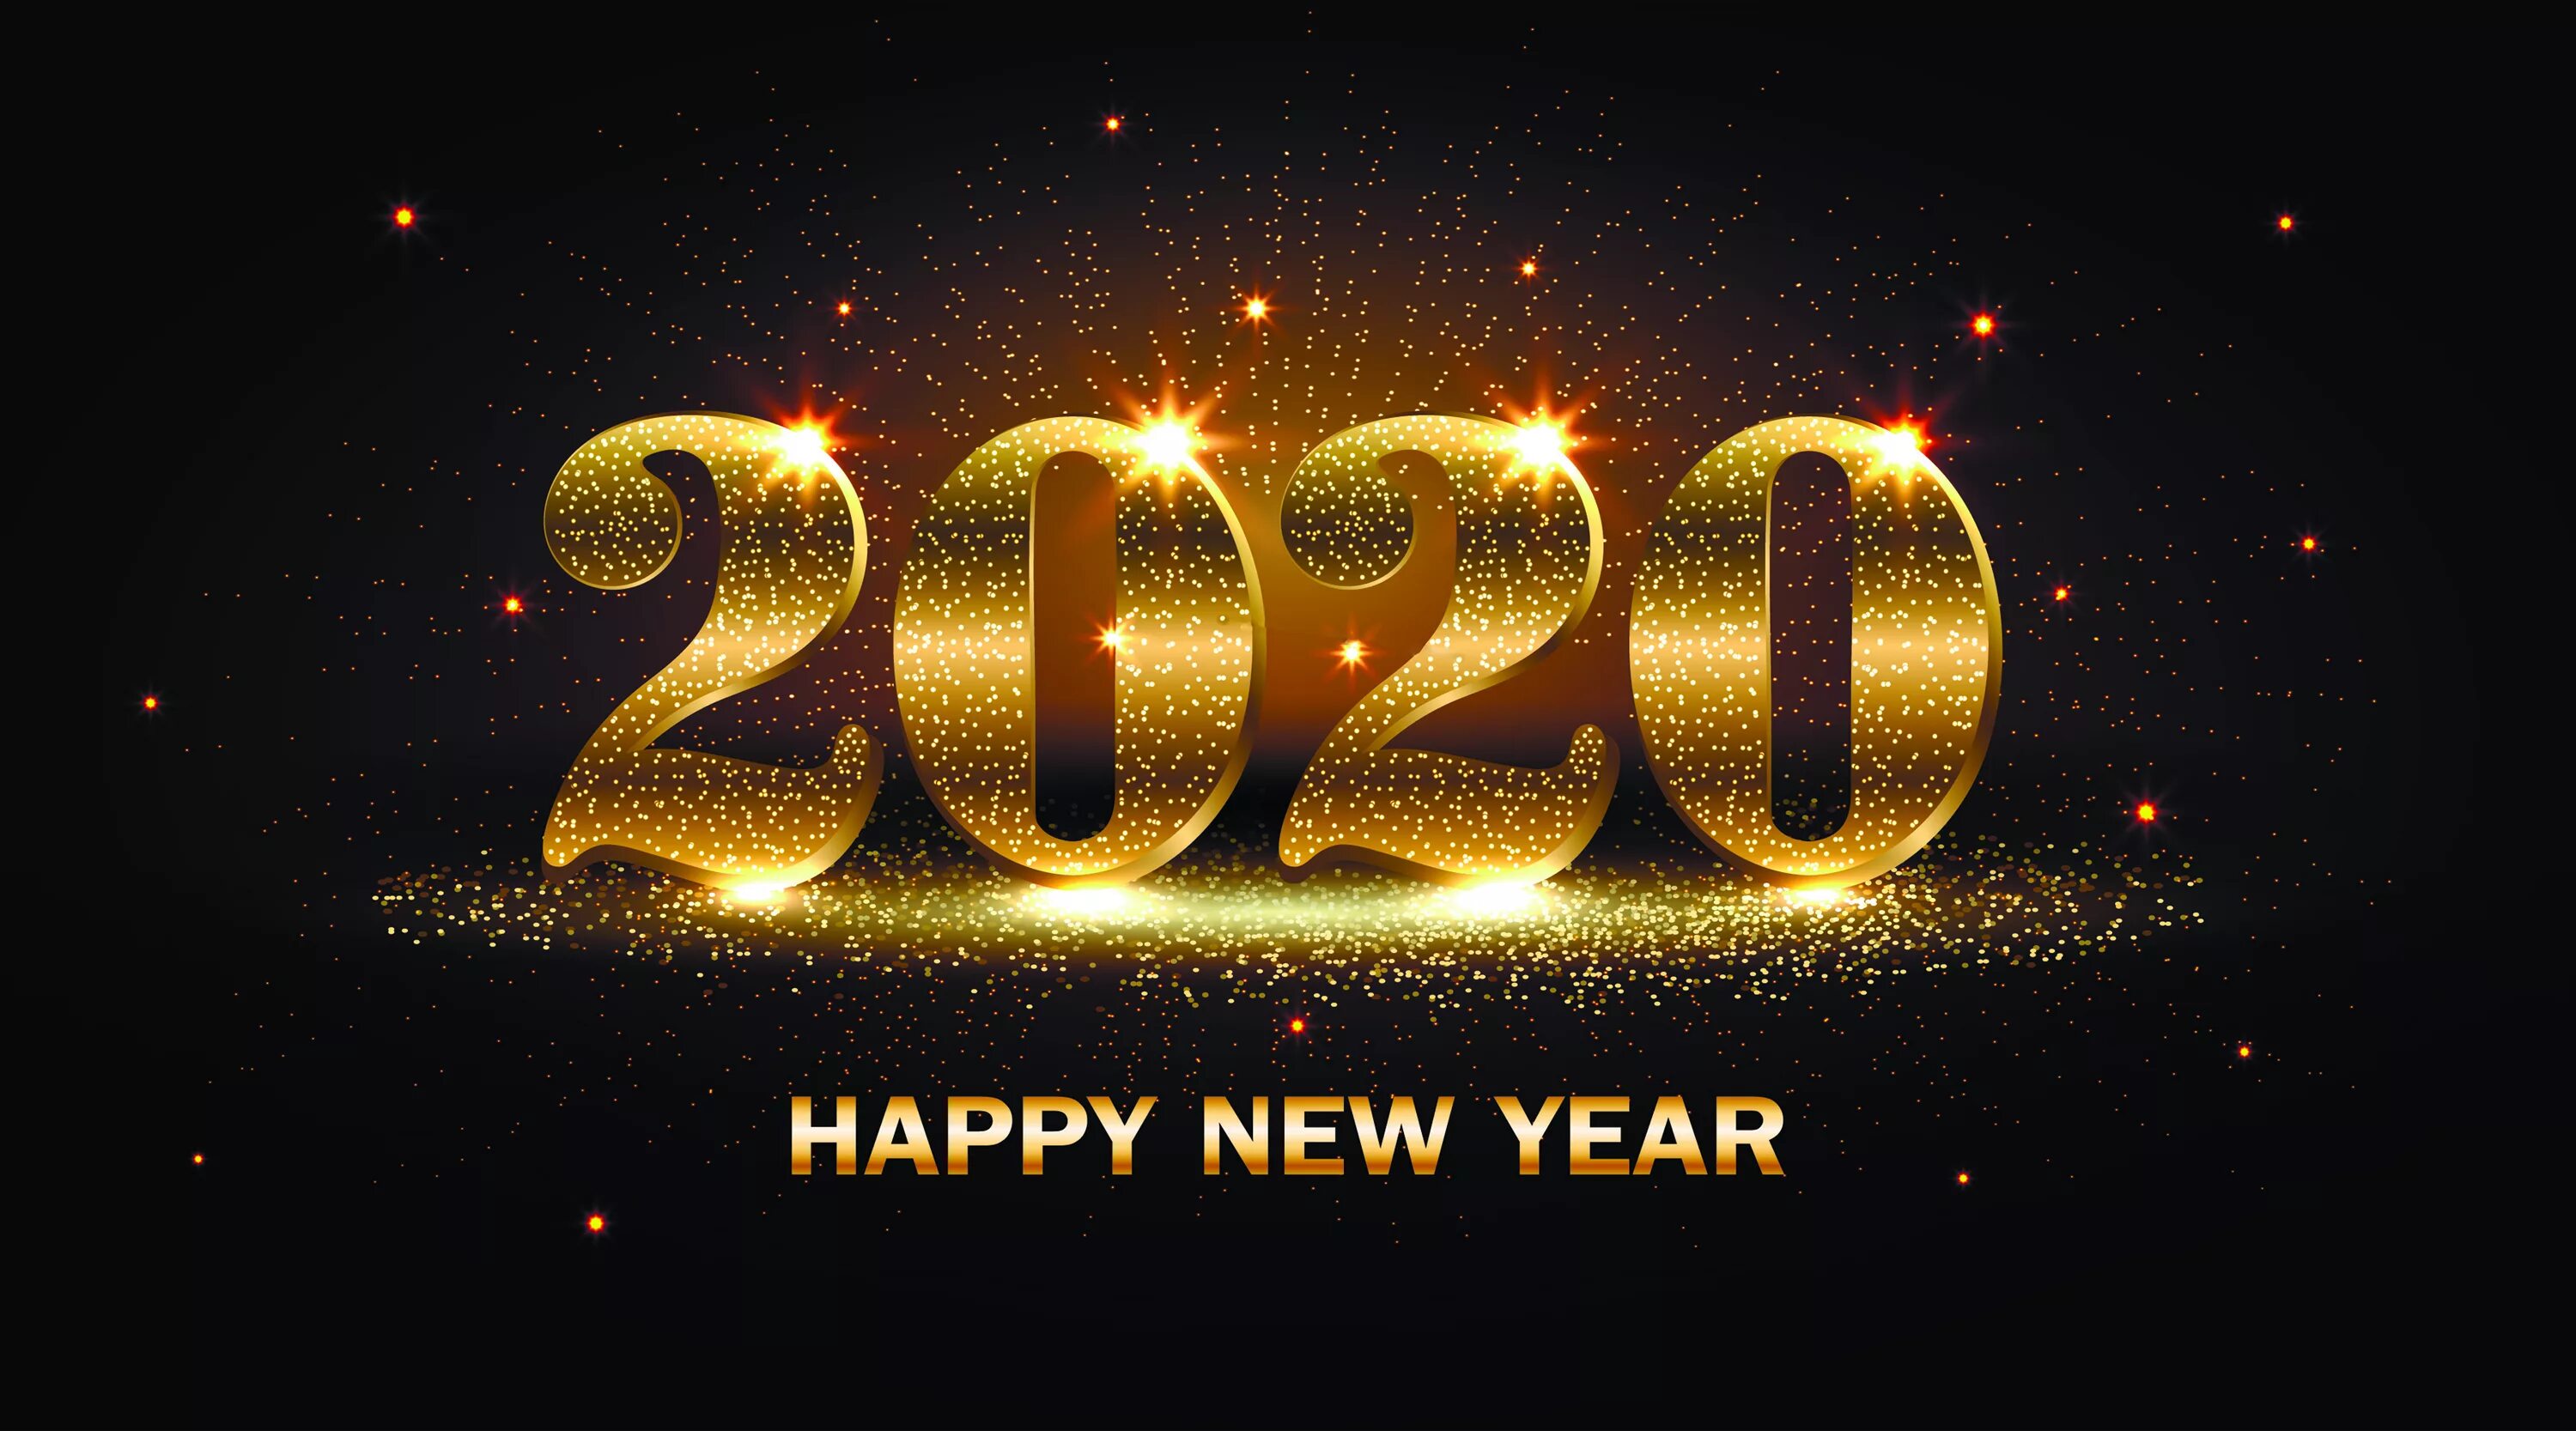 Новый год 2020 варианты. Новый год 2020. Новогодняя заставка с надписью. Обои новогодние 2020. Обои с надписью с новым годом.